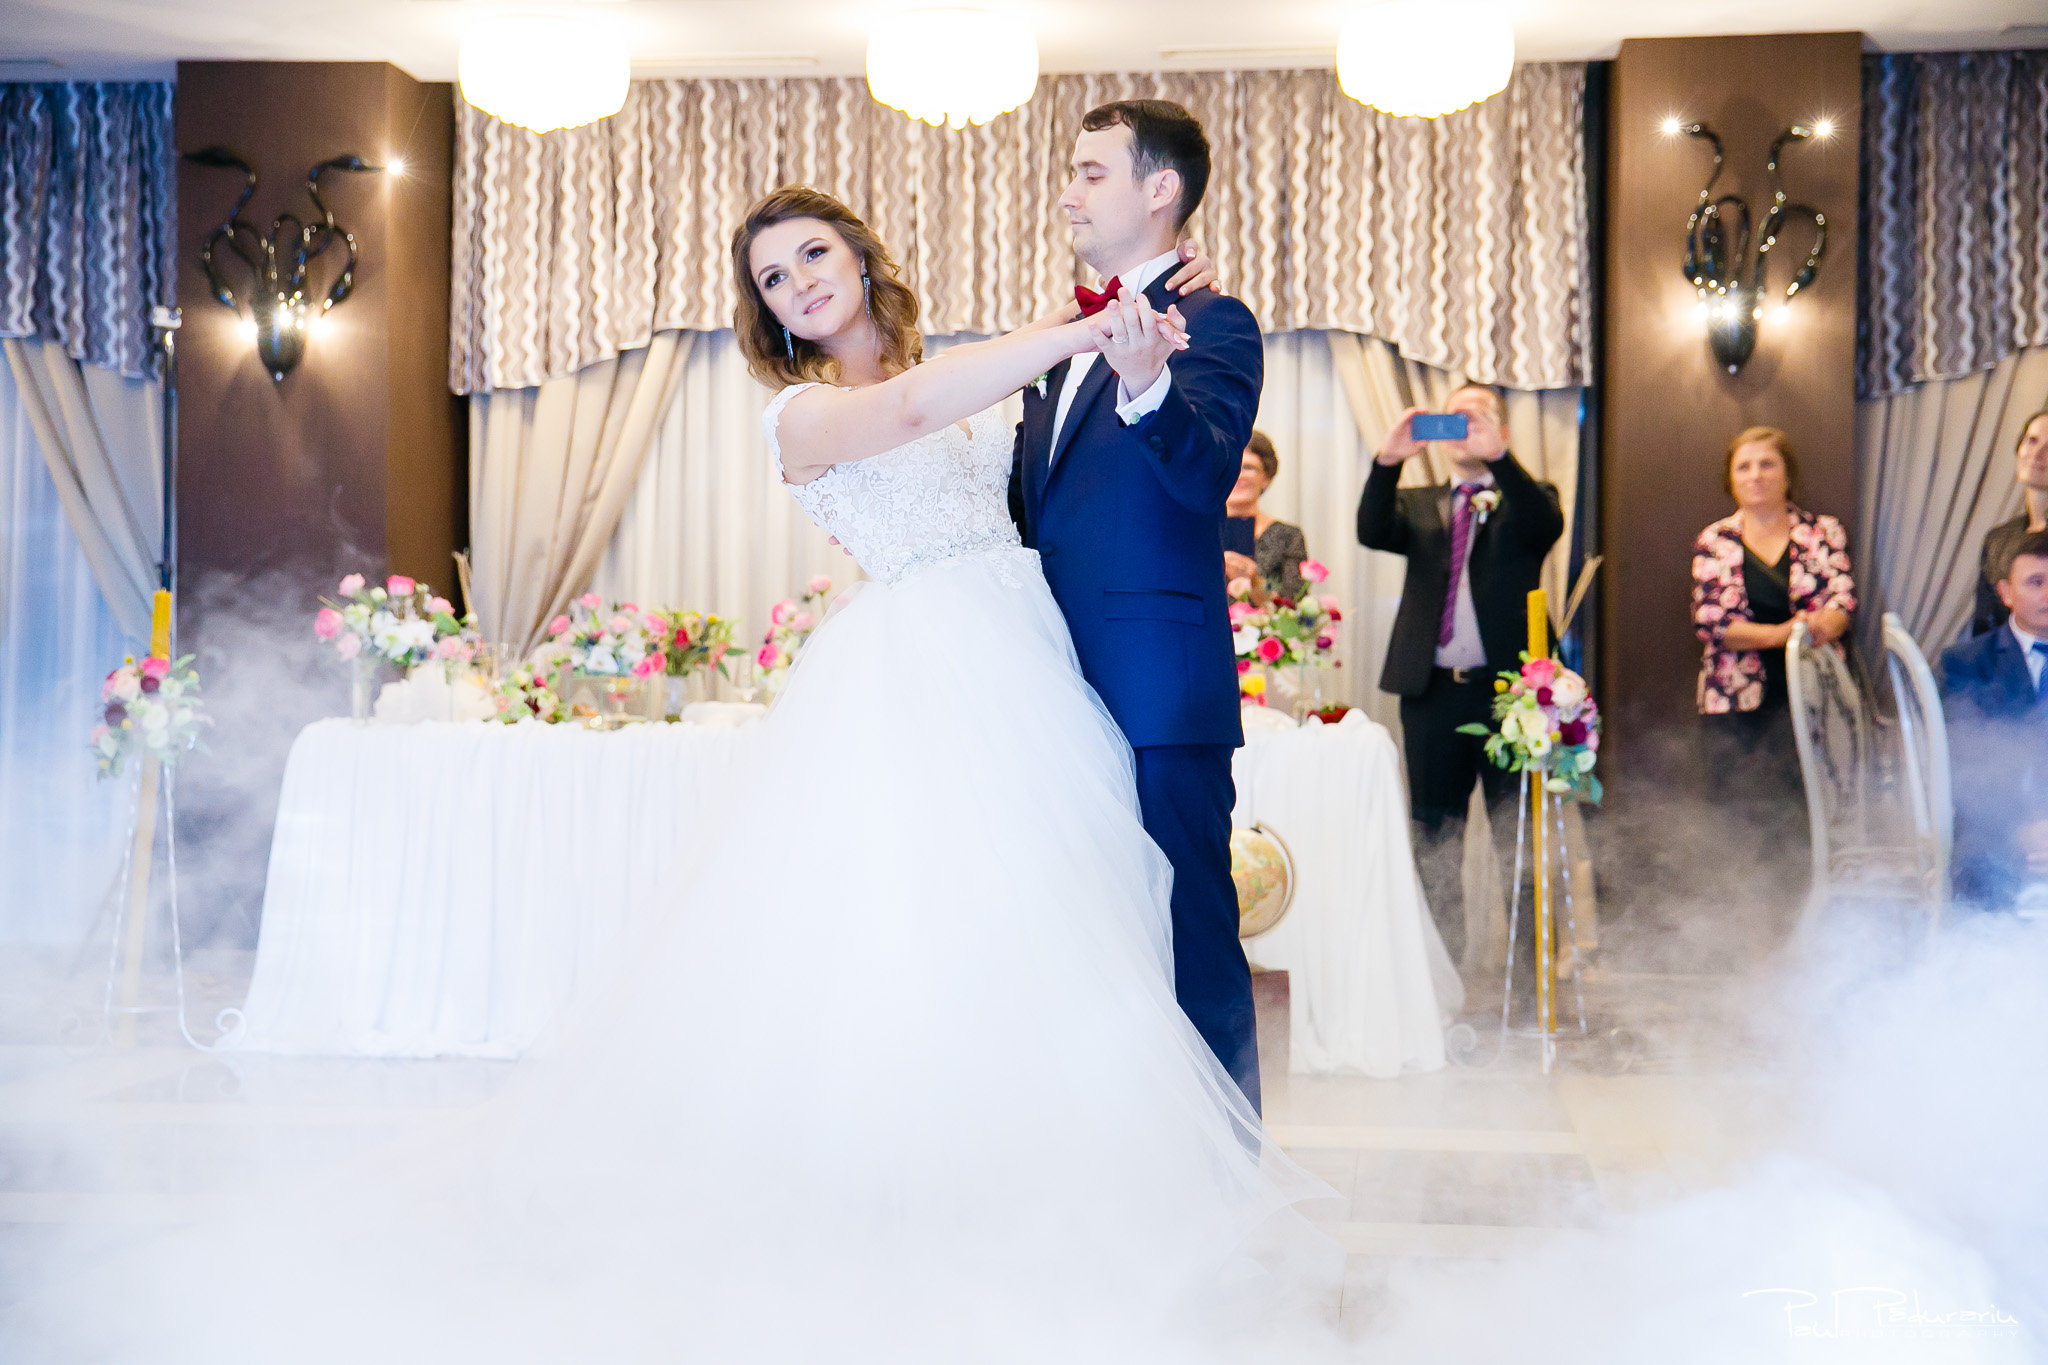 Nunta la Pleiada Iasi Alexandra si Vlad dansul mirilor www.paulpadurariu.ro © 2017 Paul Padurariu fotograf de nunta iasi